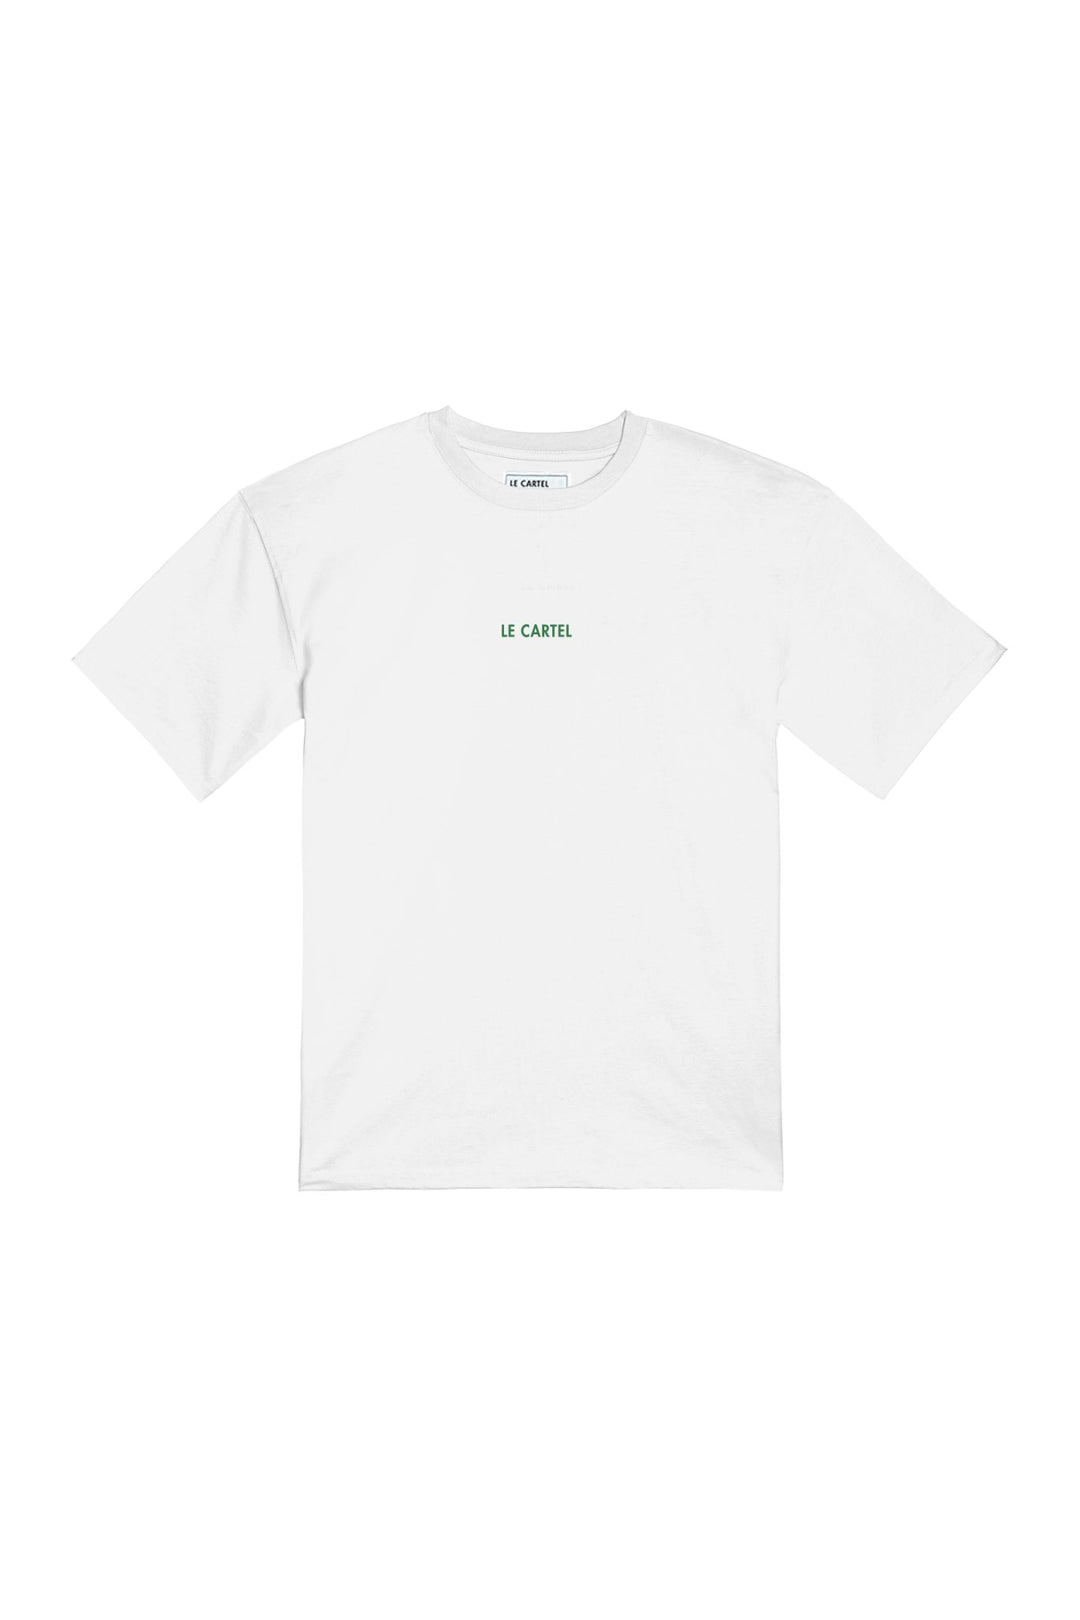 AMOURS MIGRATEURS・T-shirt unisexe・Blanc - Le Cartel